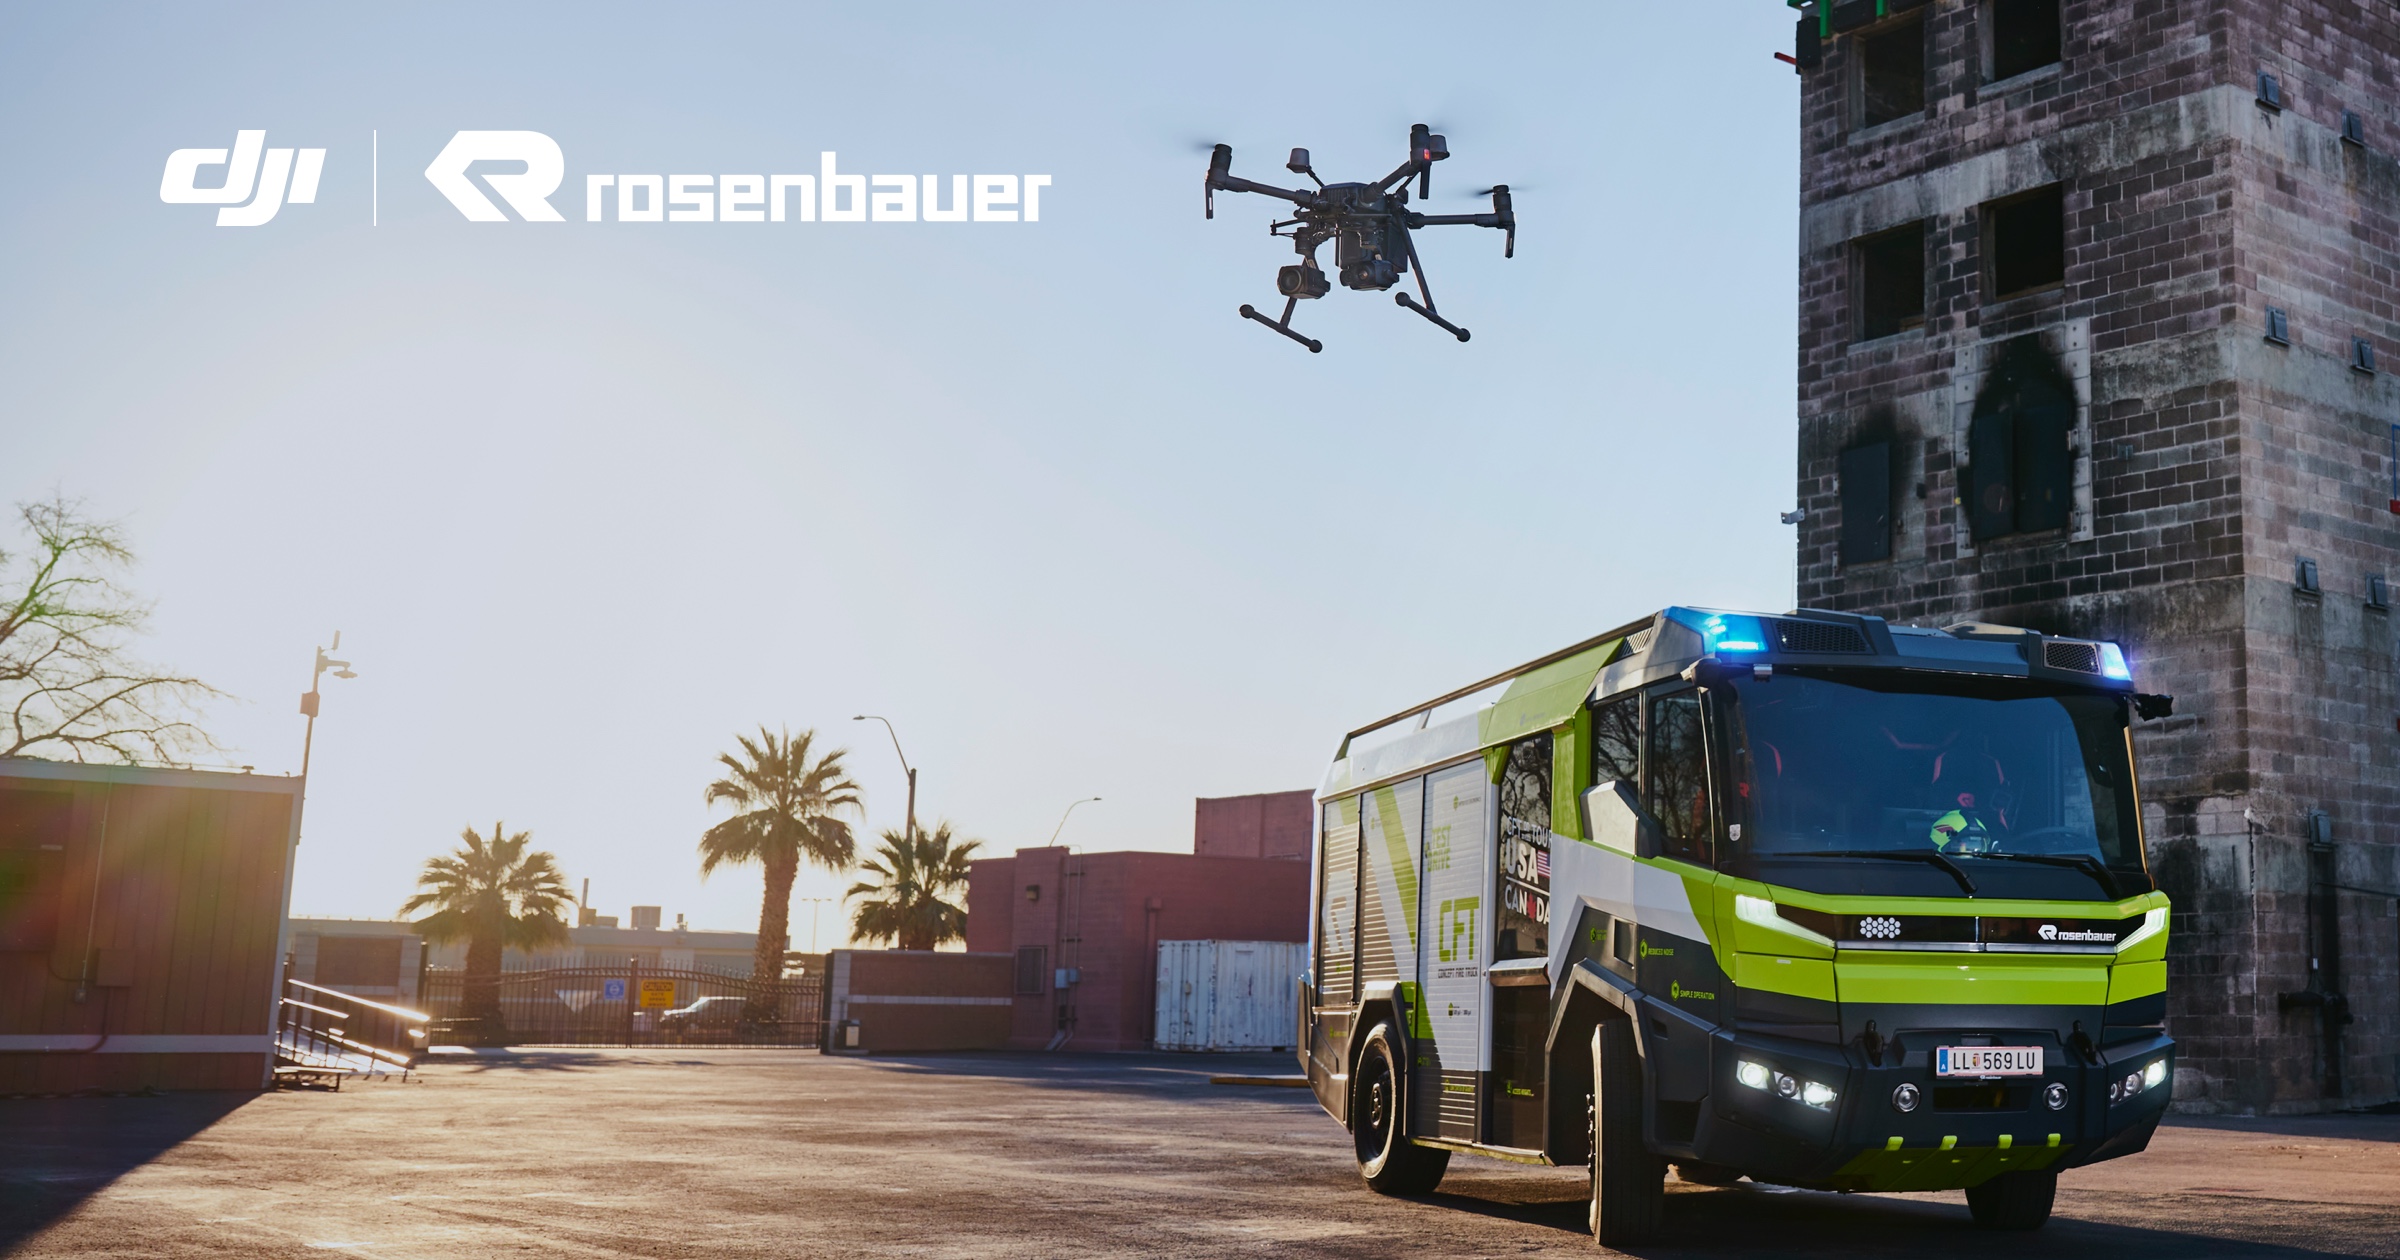 DJI X Rosenbauer　為消防車配備無人機　集成數據至消防系統